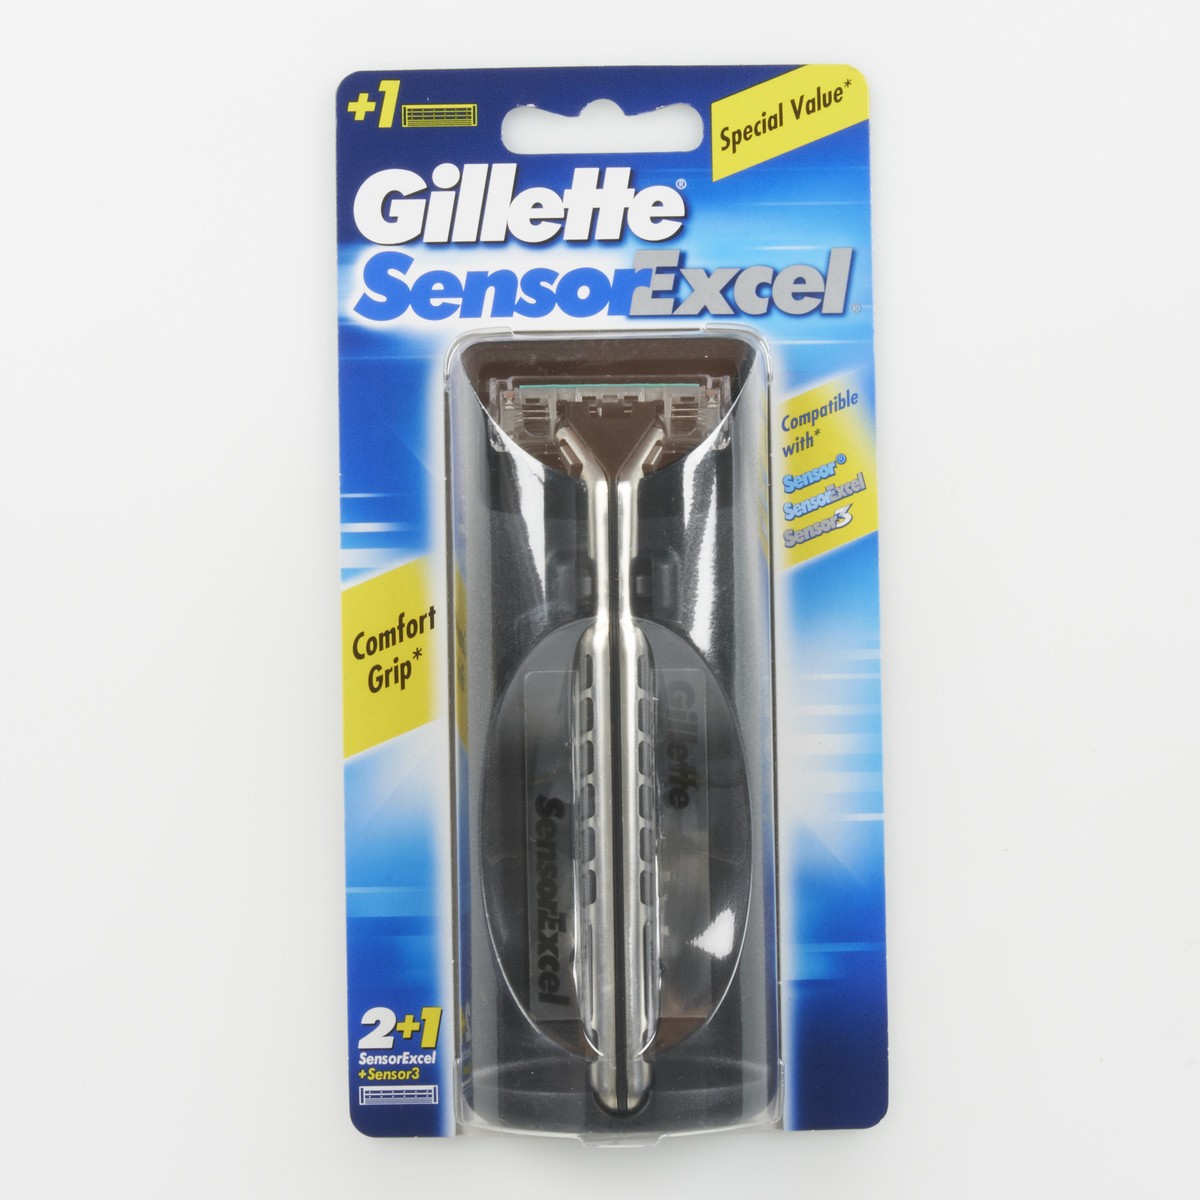 Gillette Rasoio SensorExcel + Sensor3